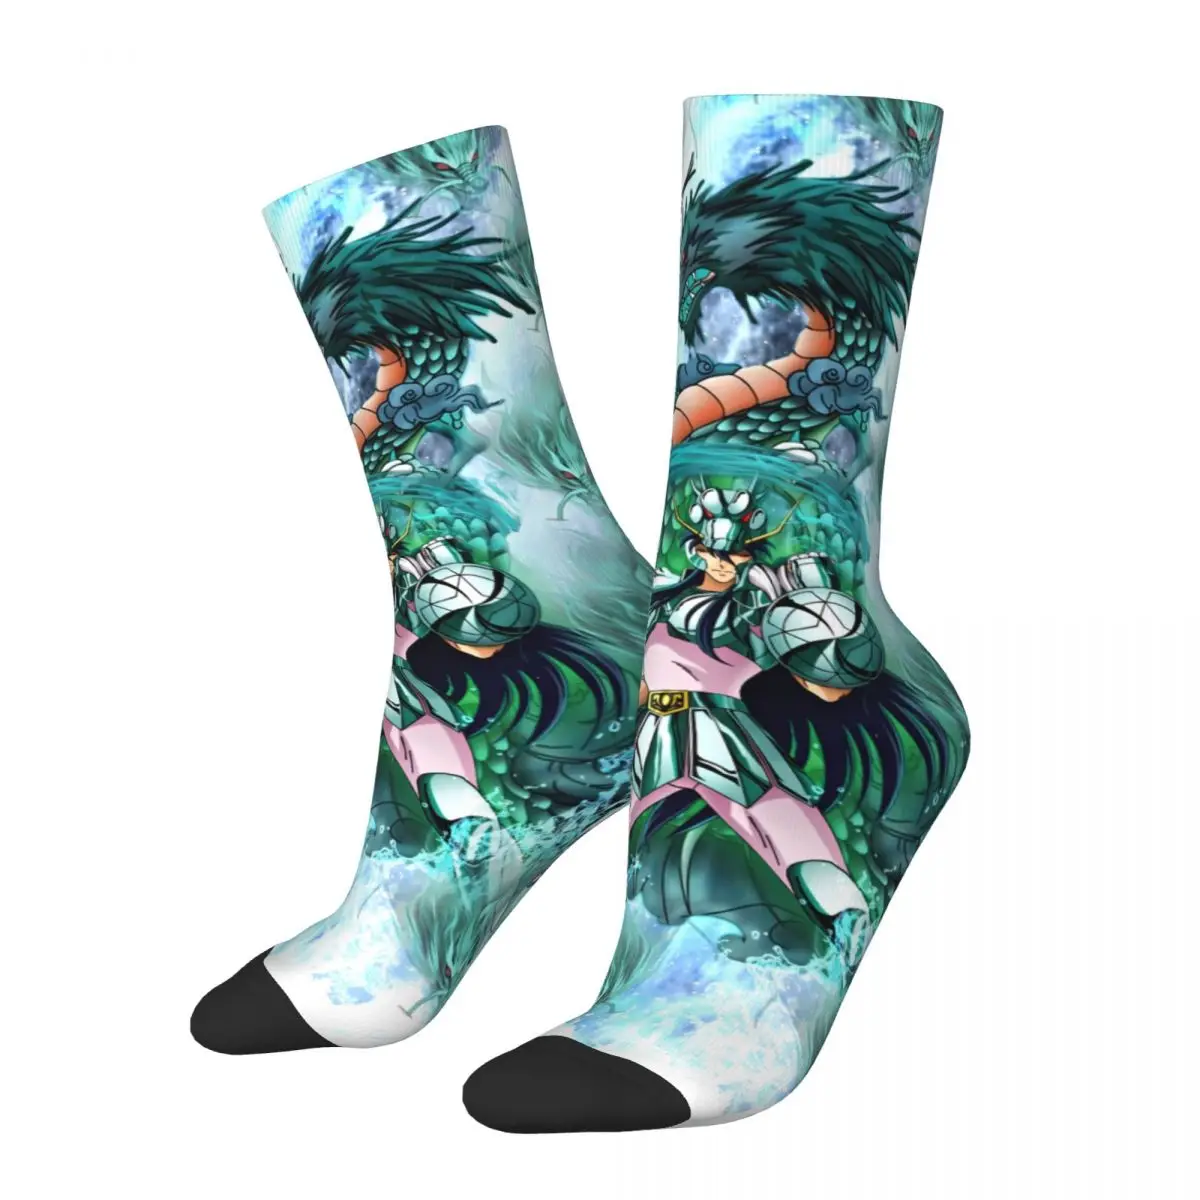 

Funny Crazy Sock for Men Shiryu De Dragon Harajuku Saint Seiya Anime Quality Pattern Printed Crew Sock Seamless Gift